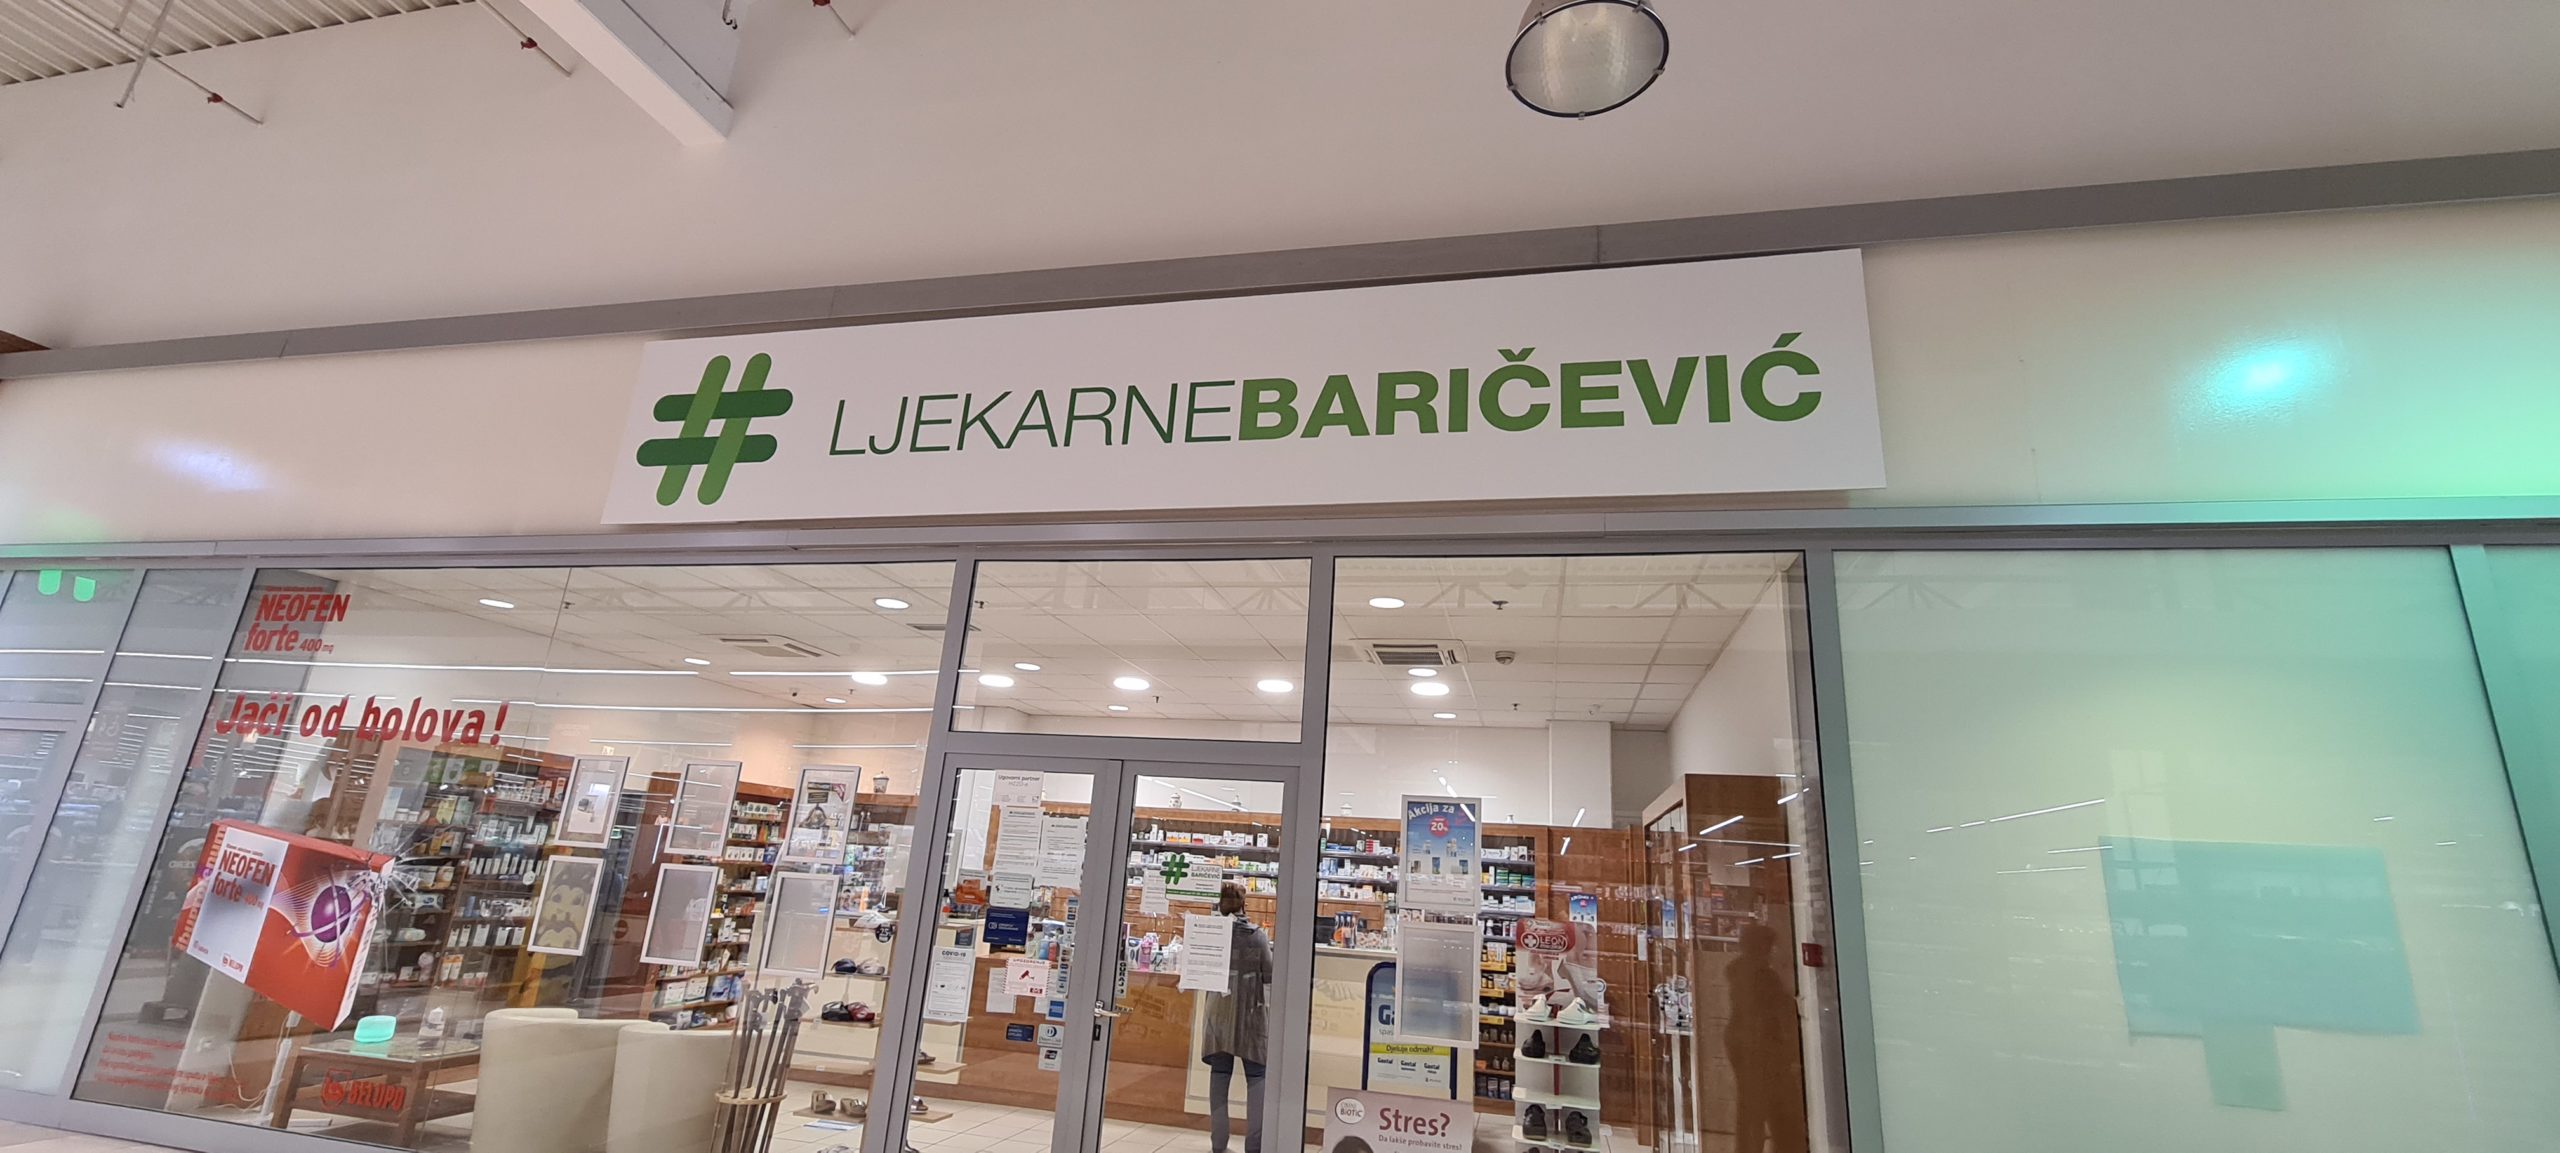 Ljekarna Baričević, Sarajevska 6. Trenutno im je ostala jedna doza od prvih 70 koje su dobili. Cijena je 96 kuna, a do sredine listopada trebali bi dobiti nove doze.